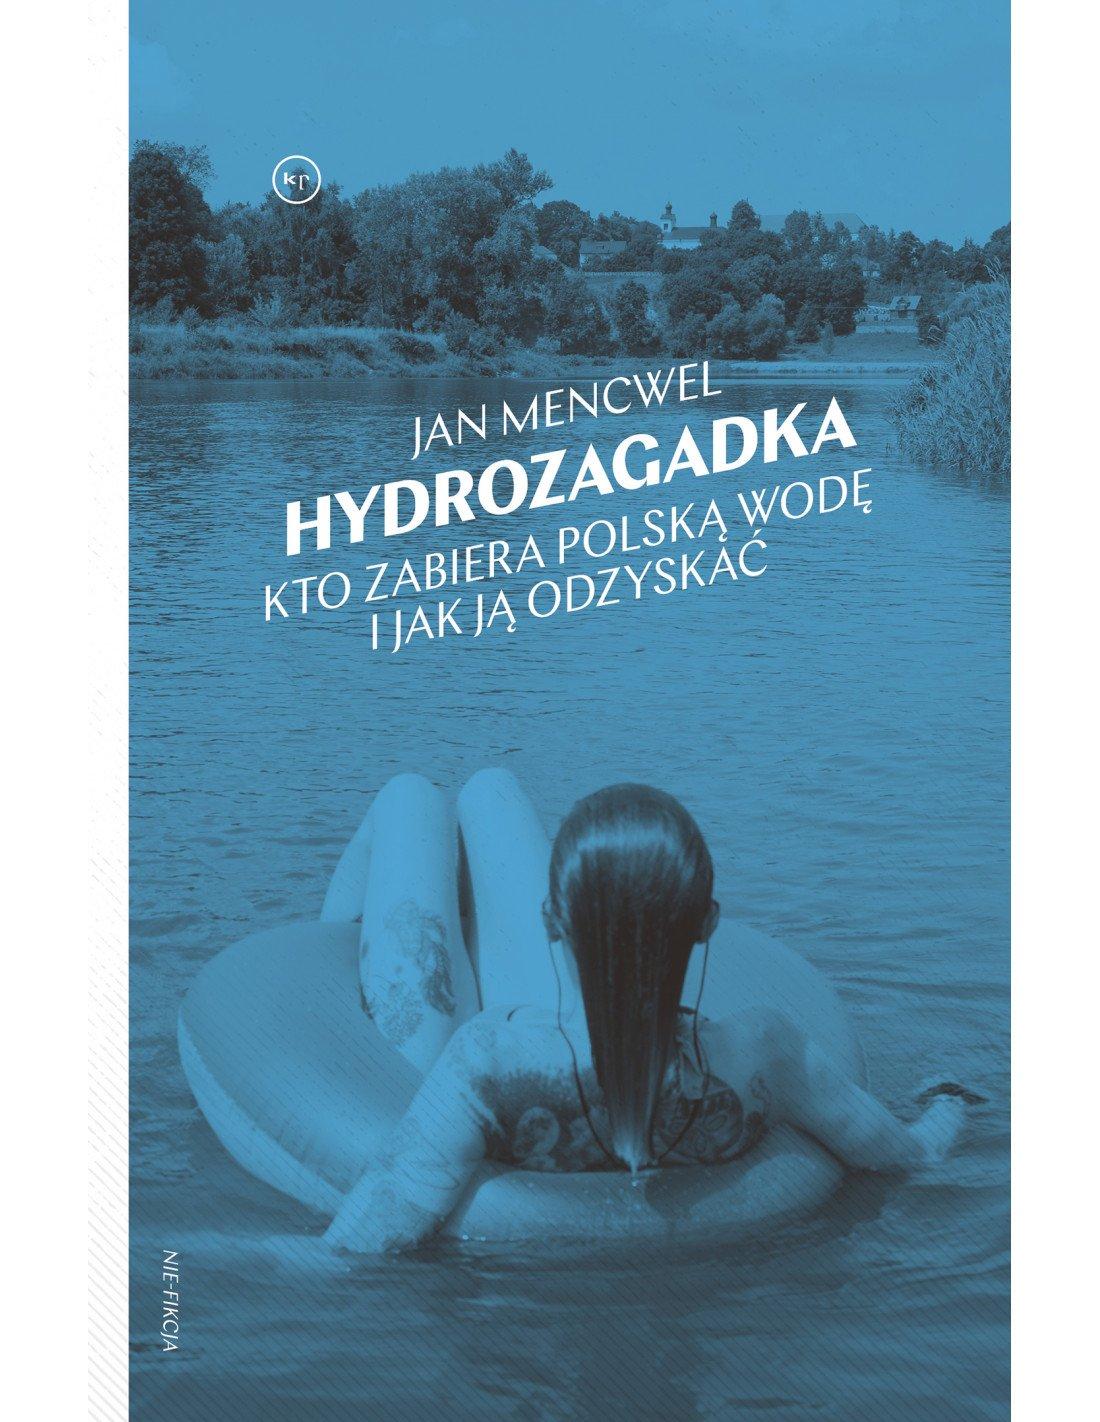 Okładka książki Hydrozagadka. Kto zabiera polska wodę i jak ją odzyskać. Na okładce kobieta pływa w wodzie na nadmuchiwanym kole